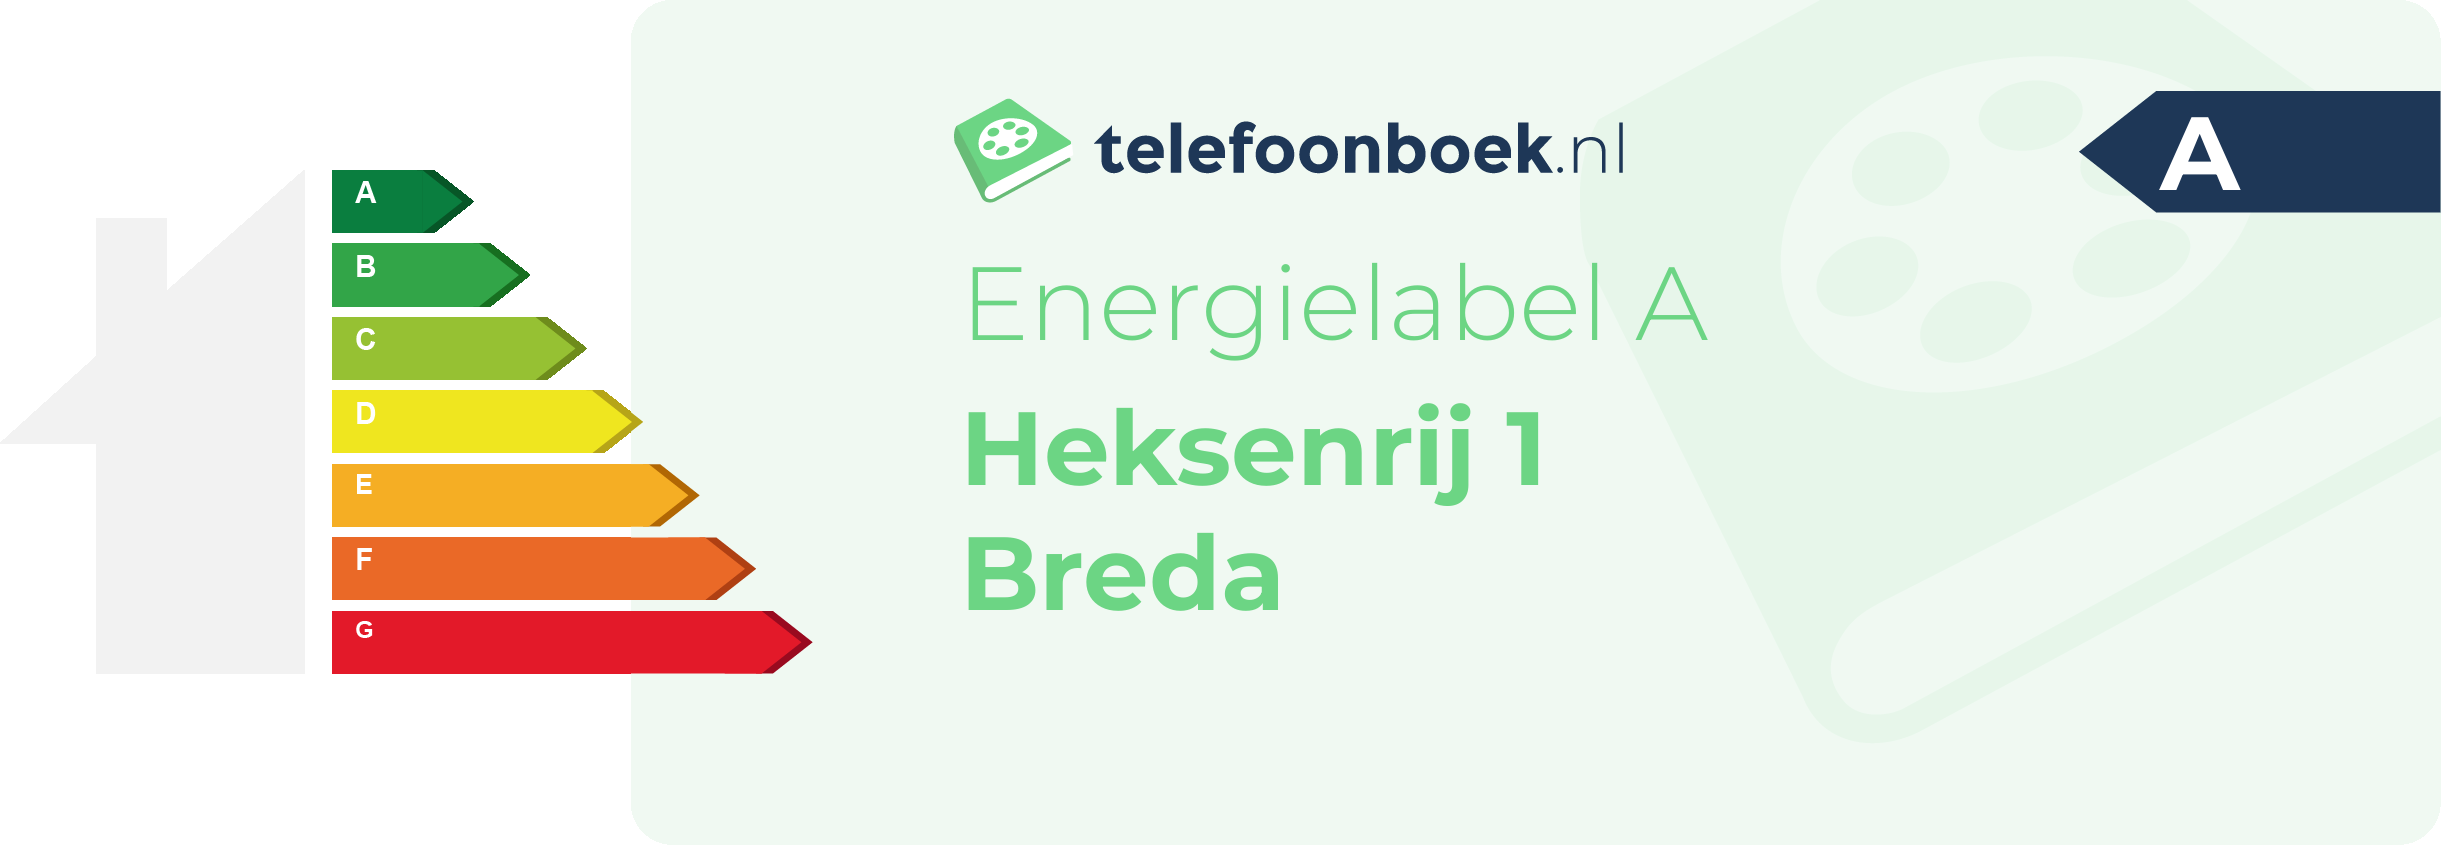 Energielabel Heksenrij 1 Breda